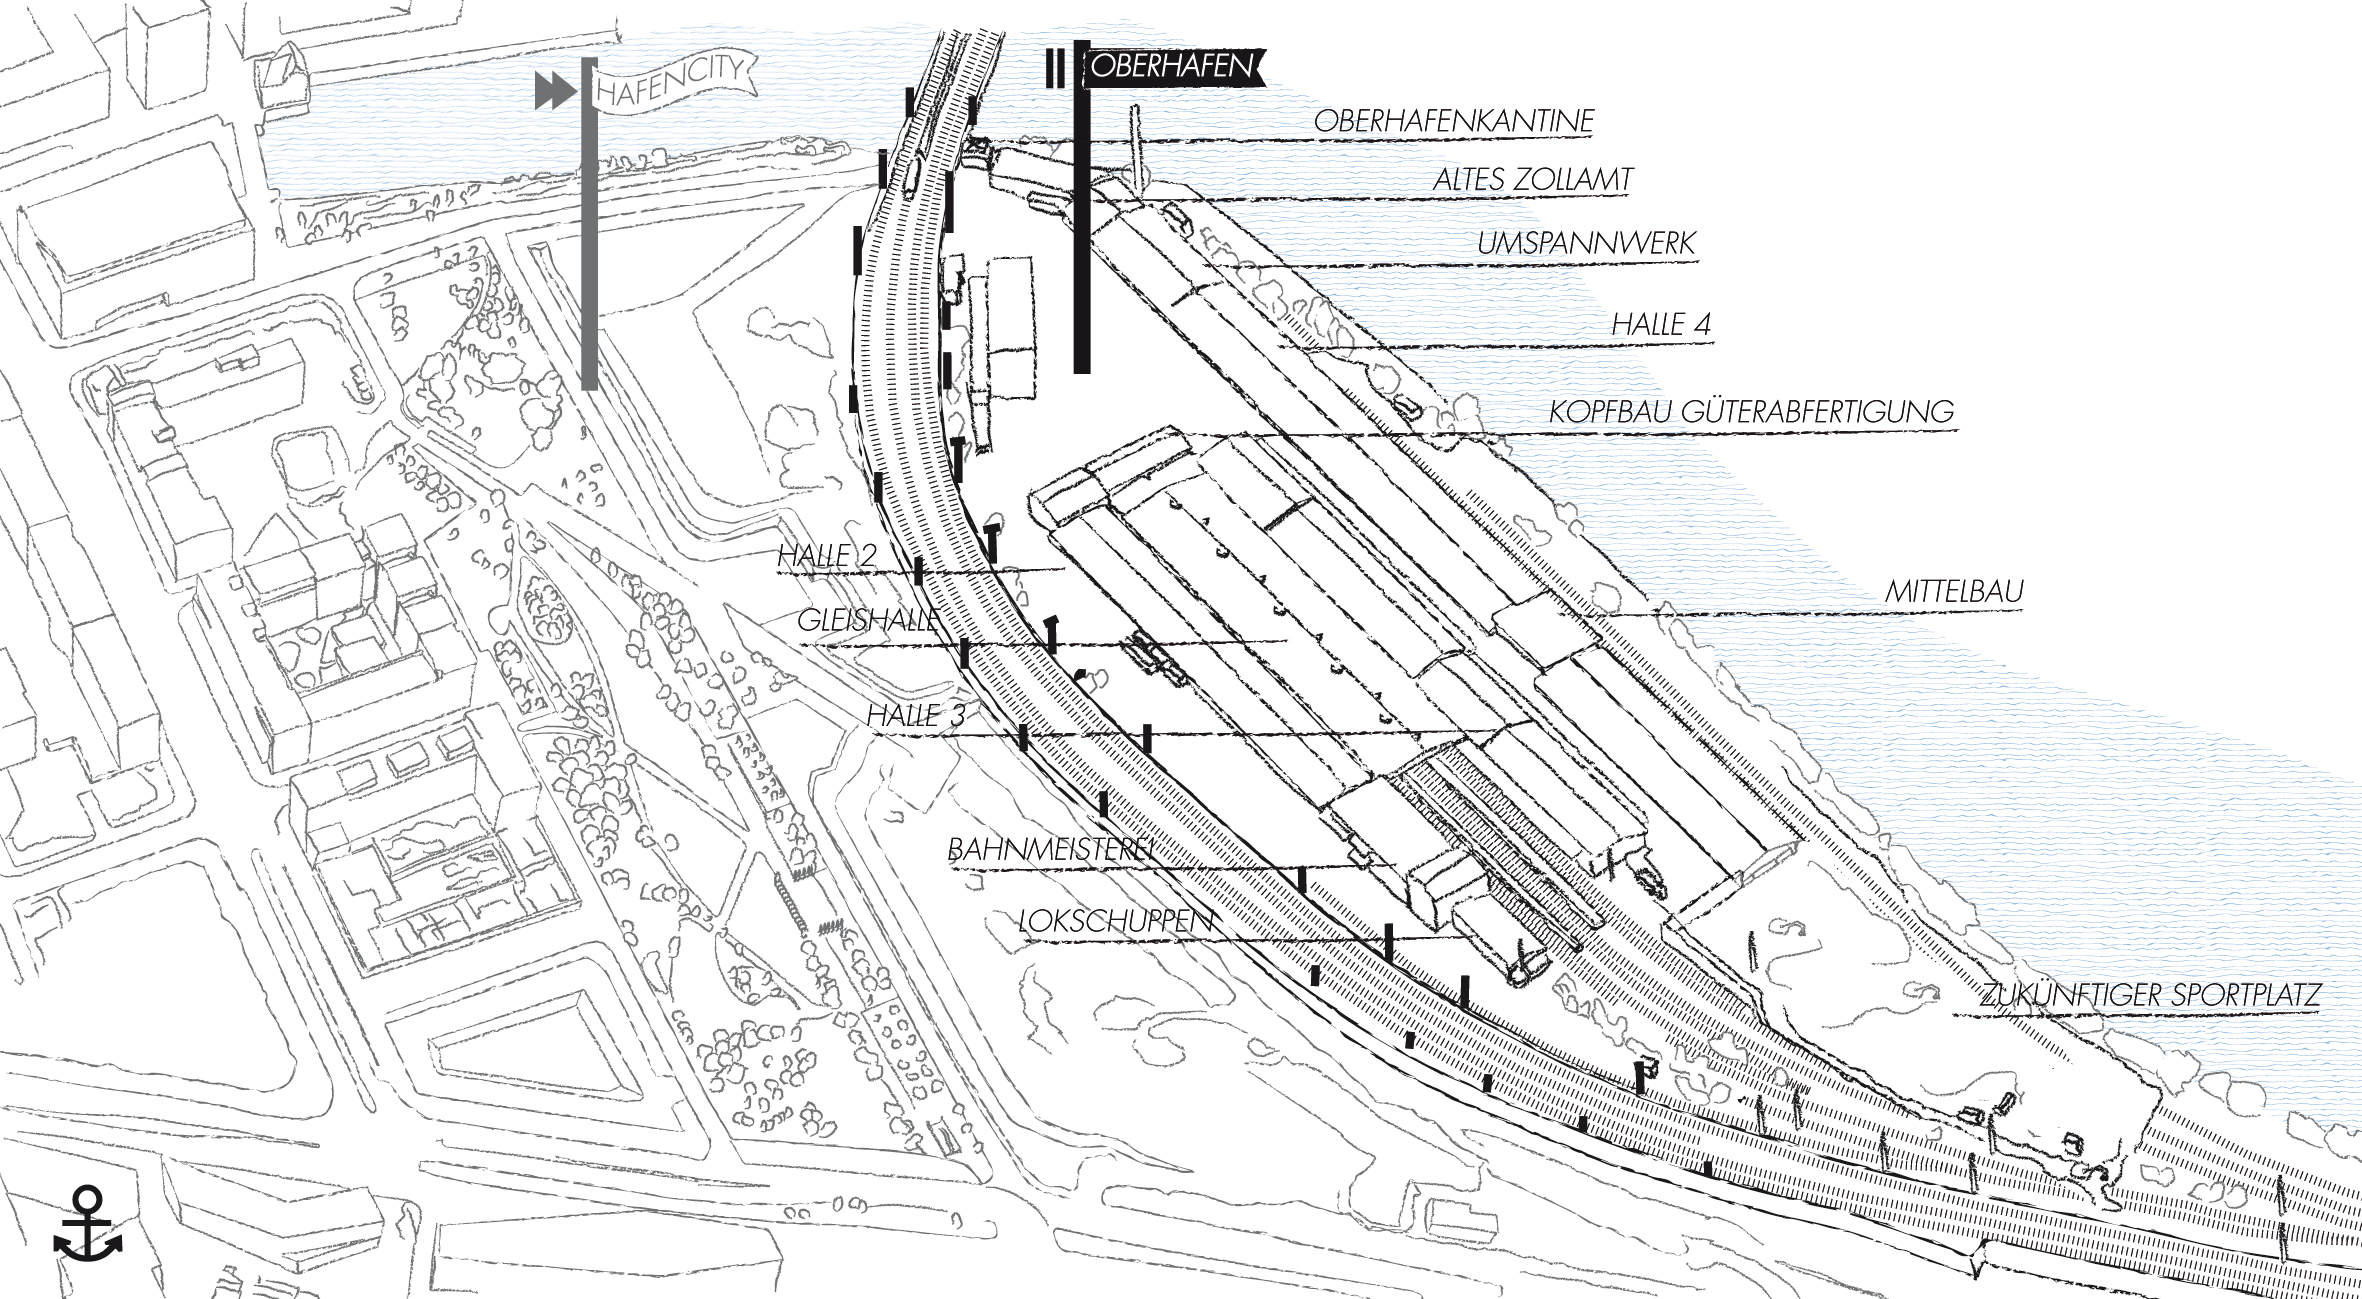 Abb. 2	Skizzierte Luftperspektive des Oberhafens in der HafenCity, 2018 (Eigene Darstellung)